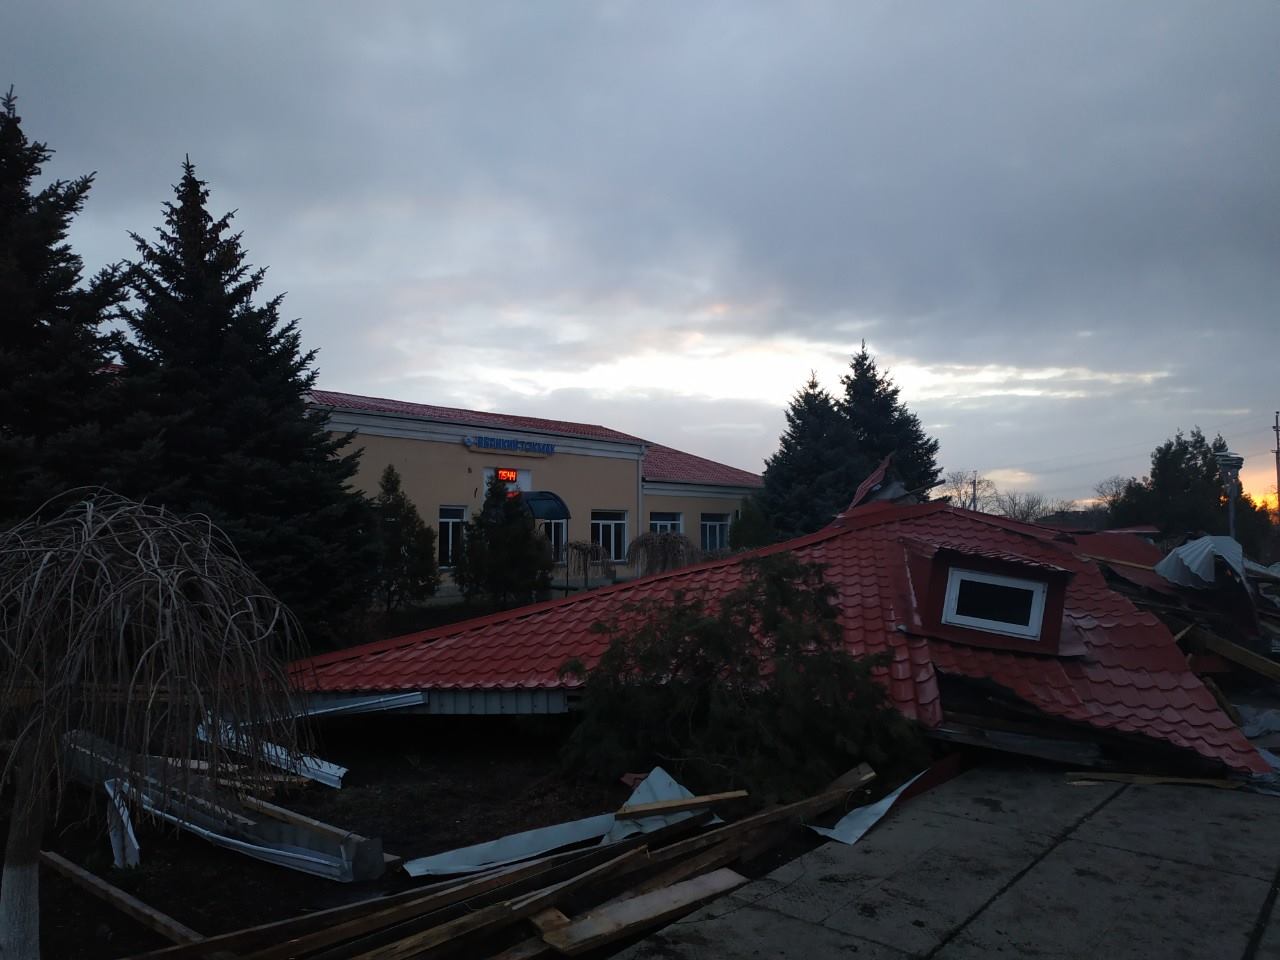 Развалилась крыша на ж/д станции. фото: fb Віктор Халамівський